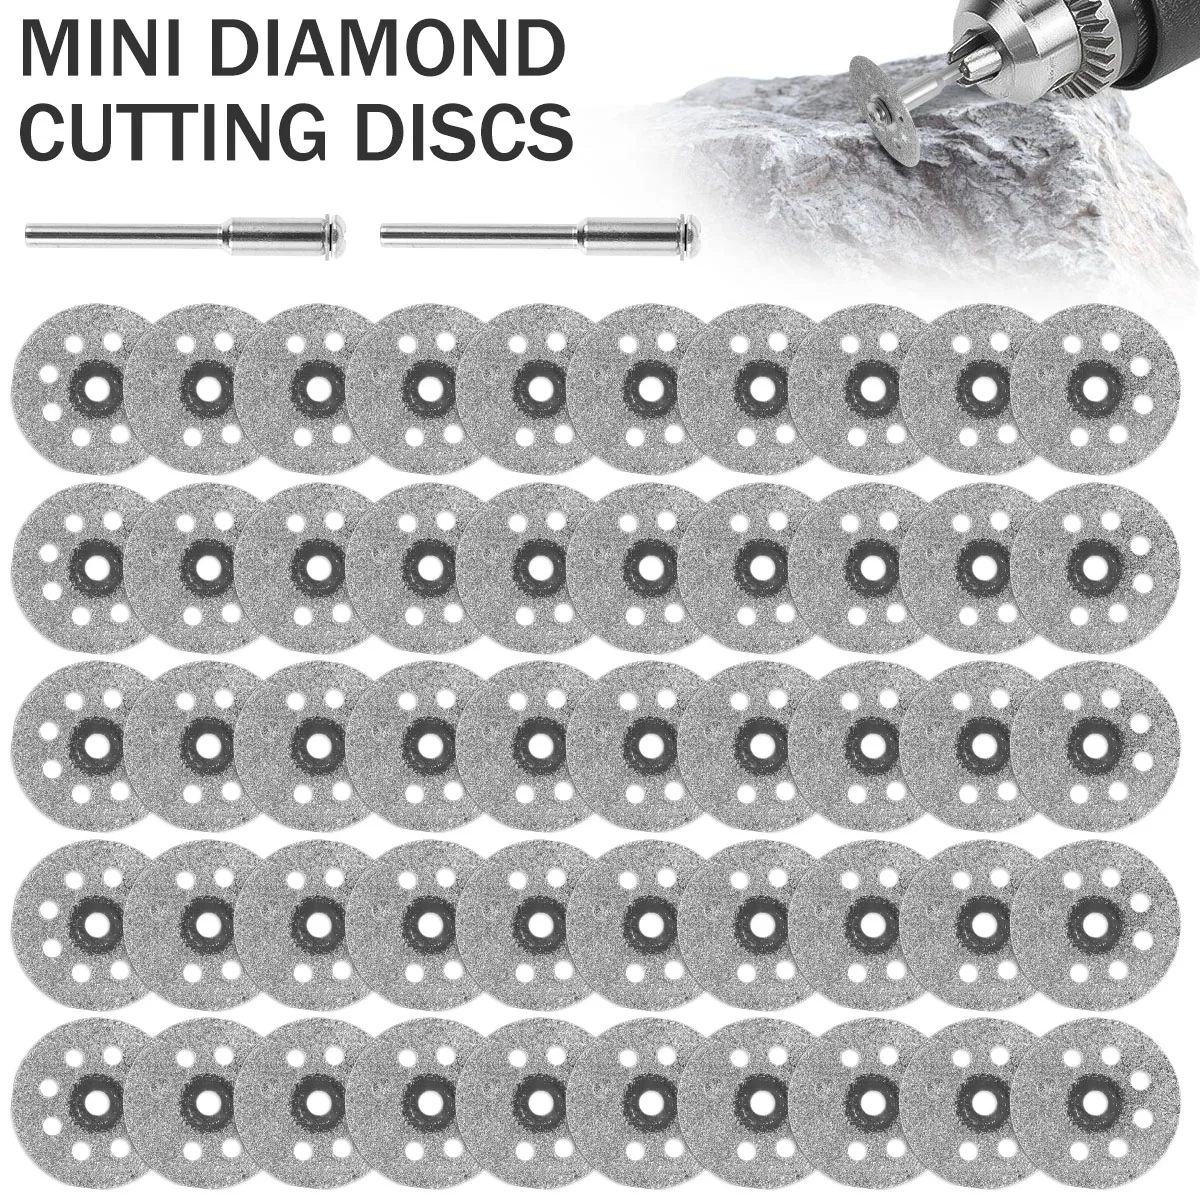 

Набор алмазных режущих мини-дисков 50 шт. со шатуном, 22 мм, 8 отверстий, прочные маленькие алмазные режущие диски, острые круглые алмазы